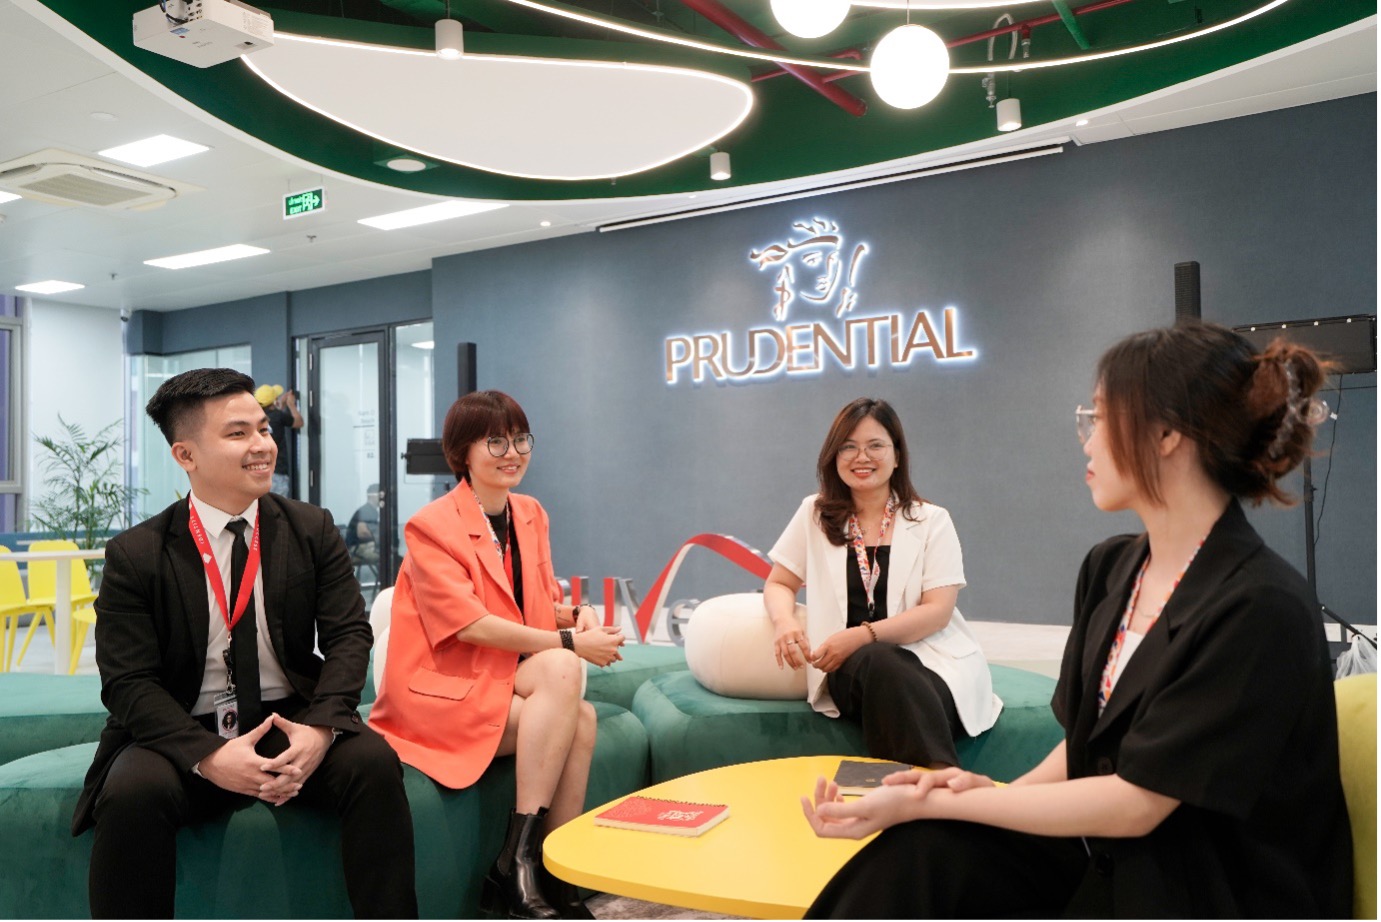 Prudential khai trương Trung tâm Chăm sóc Khách hàng mới tại Đà Nẵng, cam kết mang đến trải nghiệm tốt nhất